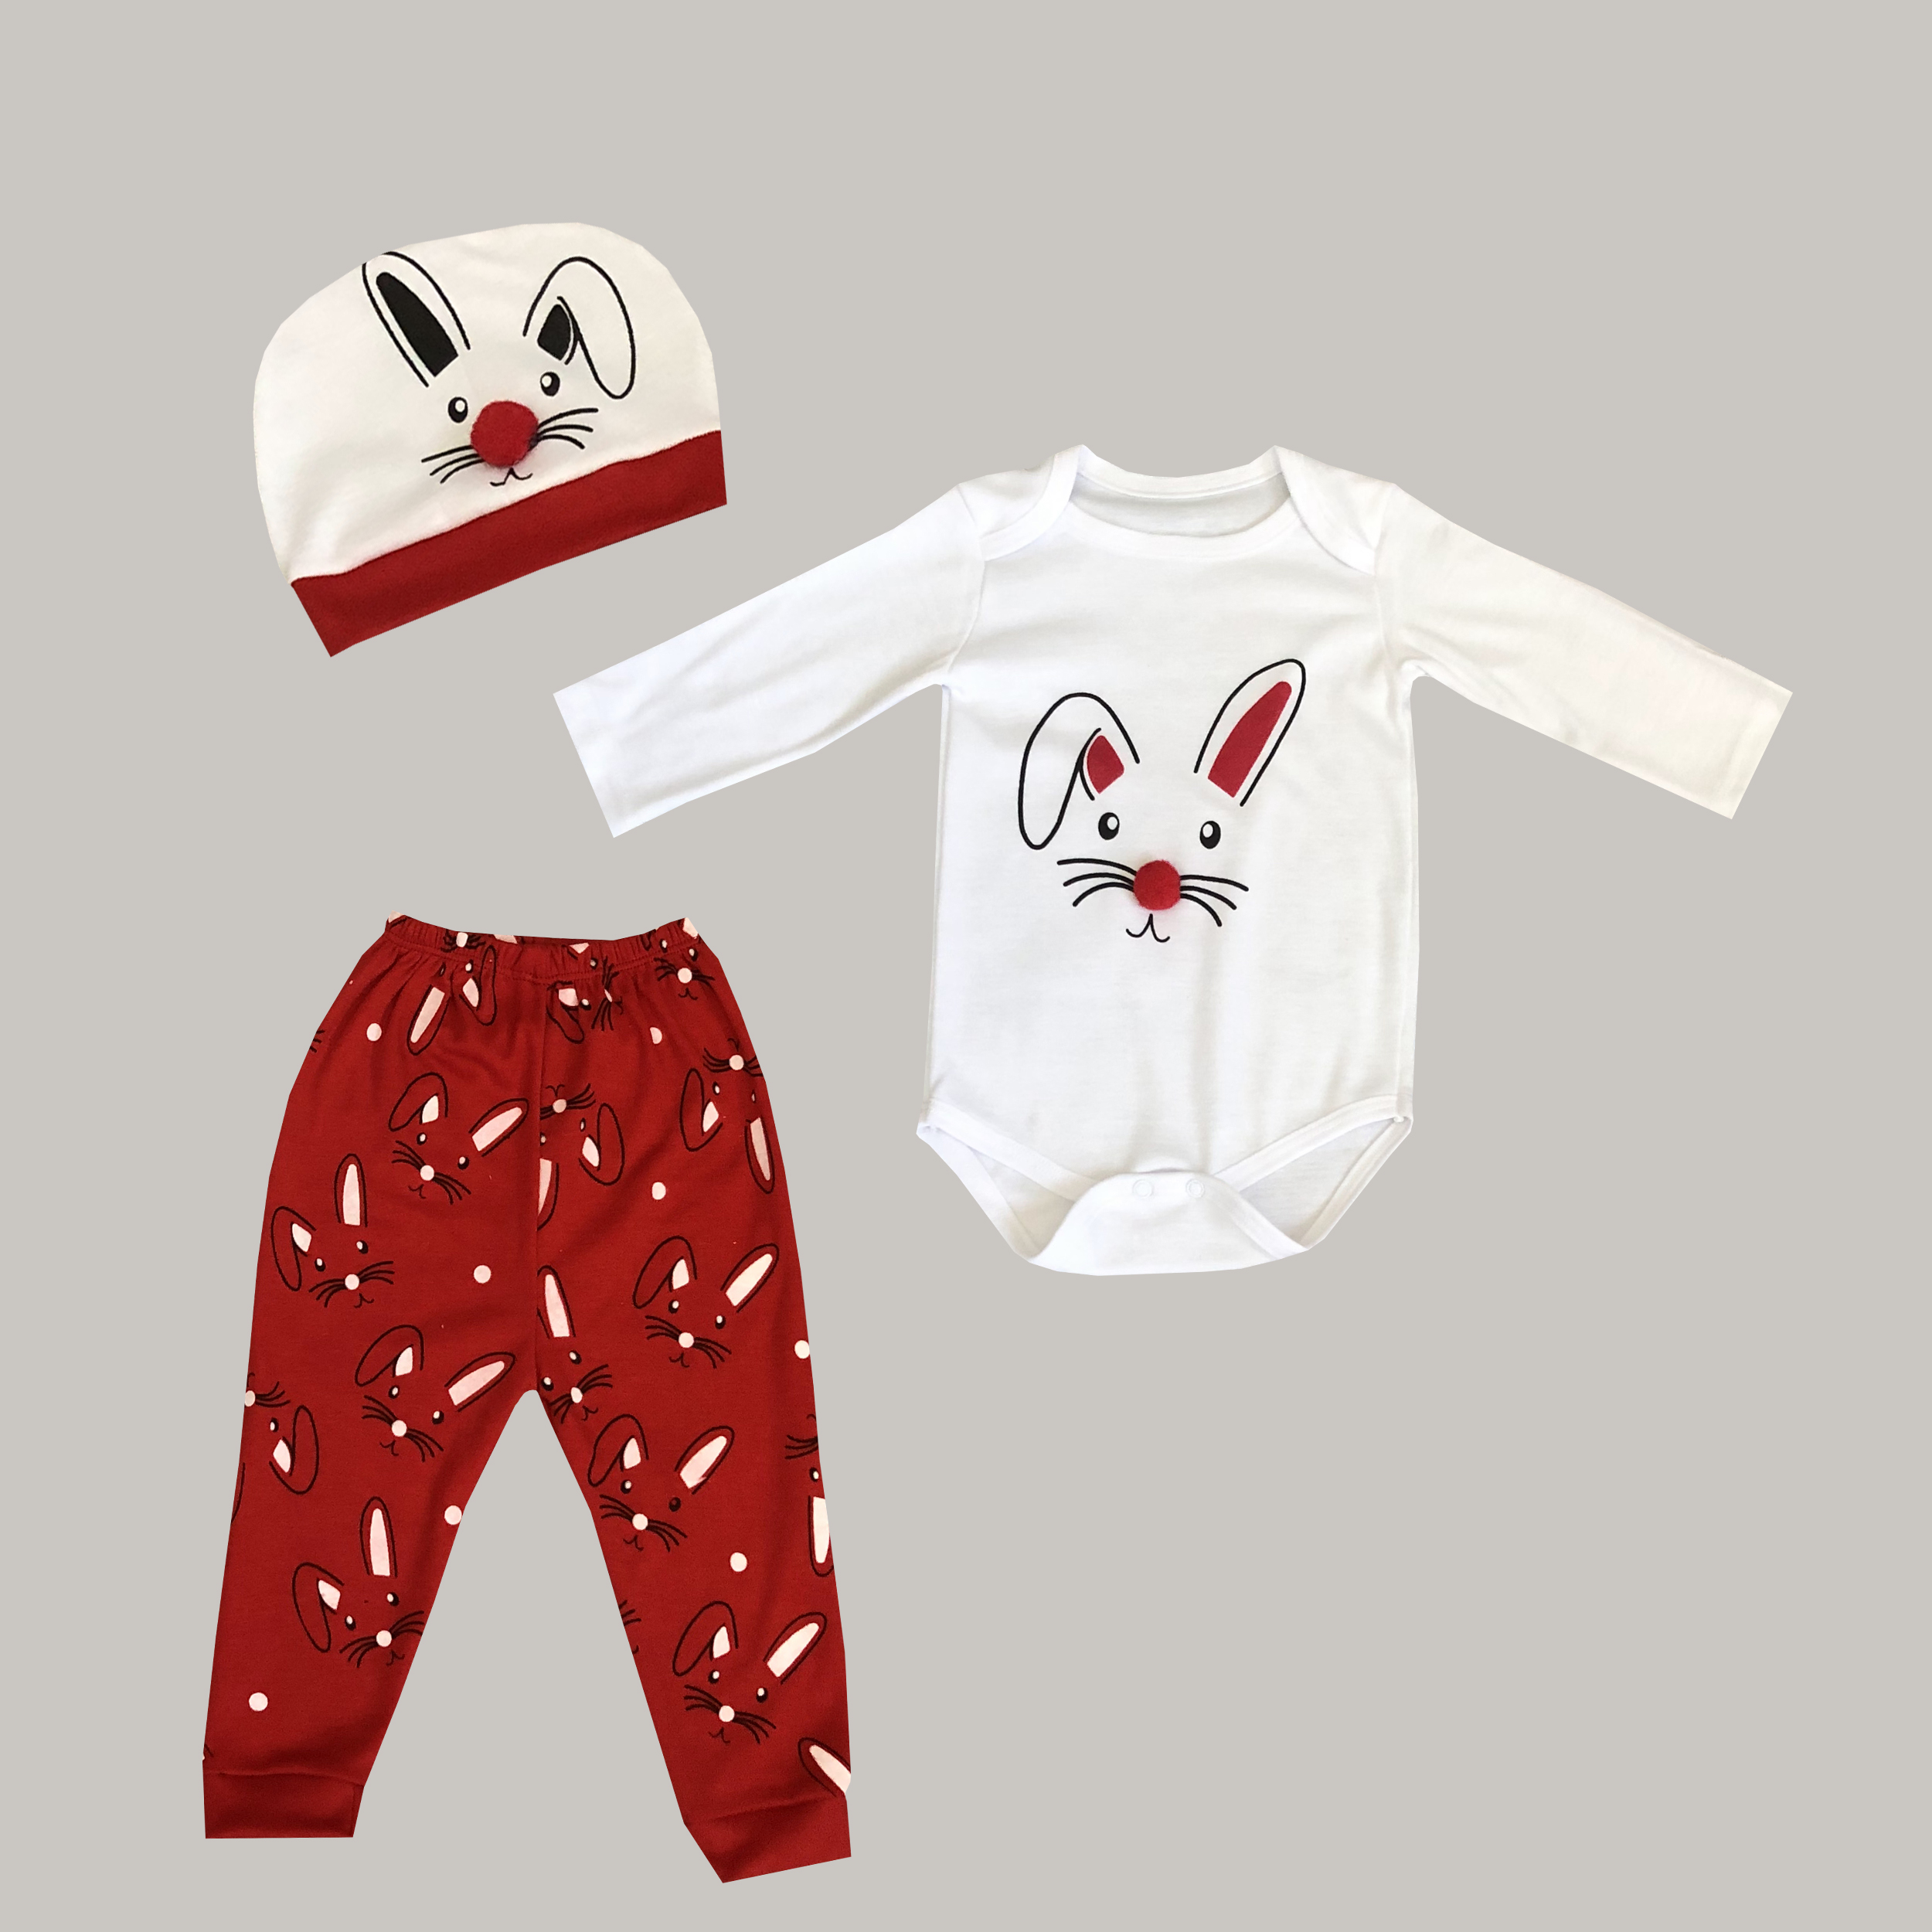 نقد و بررسی ست 3 تکه لباس نوزادی مدل خرگوش توسط خریداران